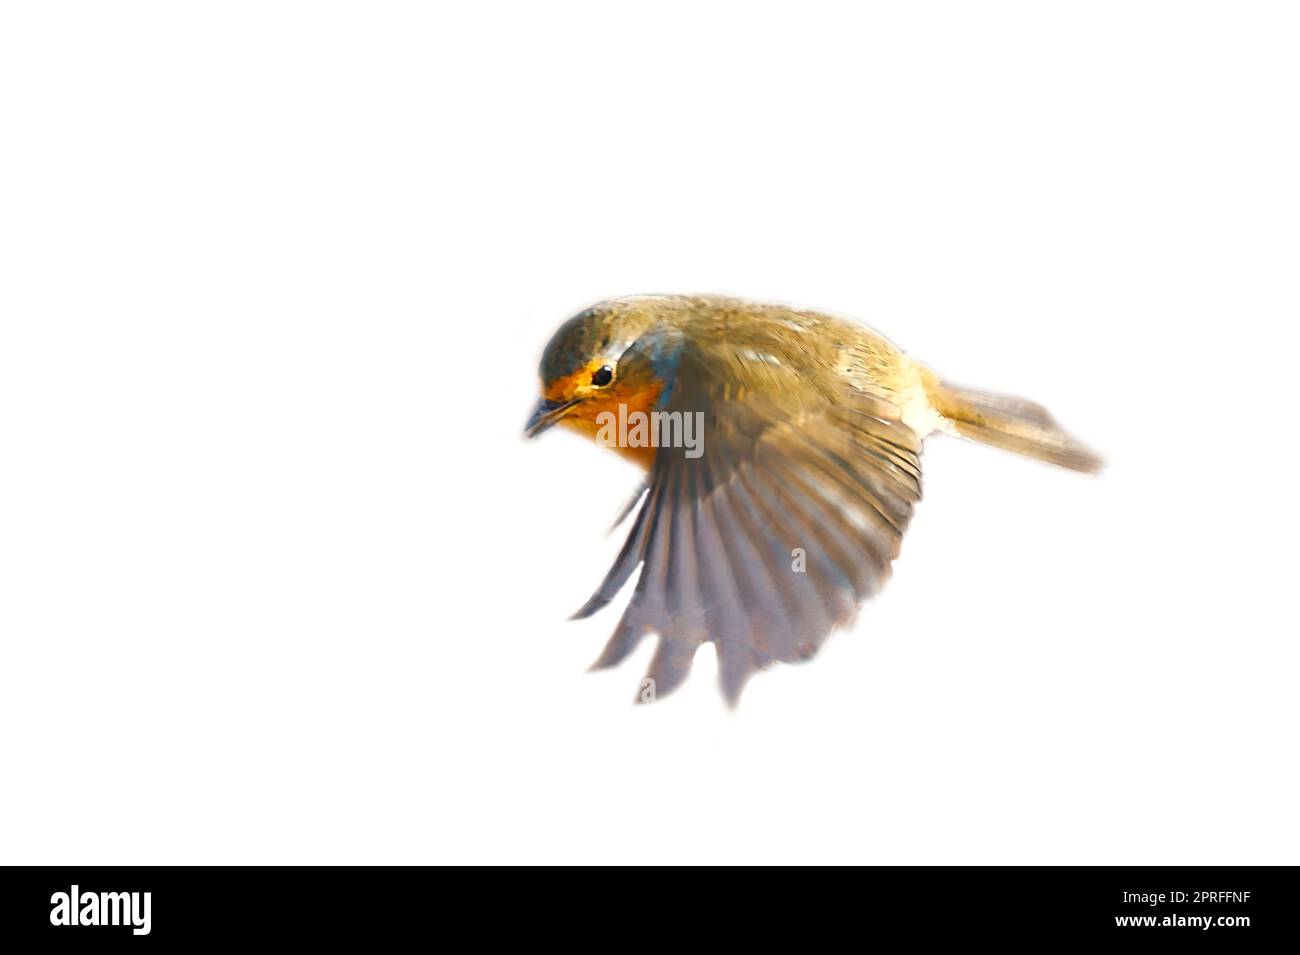 robin en vol, isolé, rogné pour montage. Songbird avec un plumage rouge, blanc et orange. Oiseau de la nature Banque D'Images